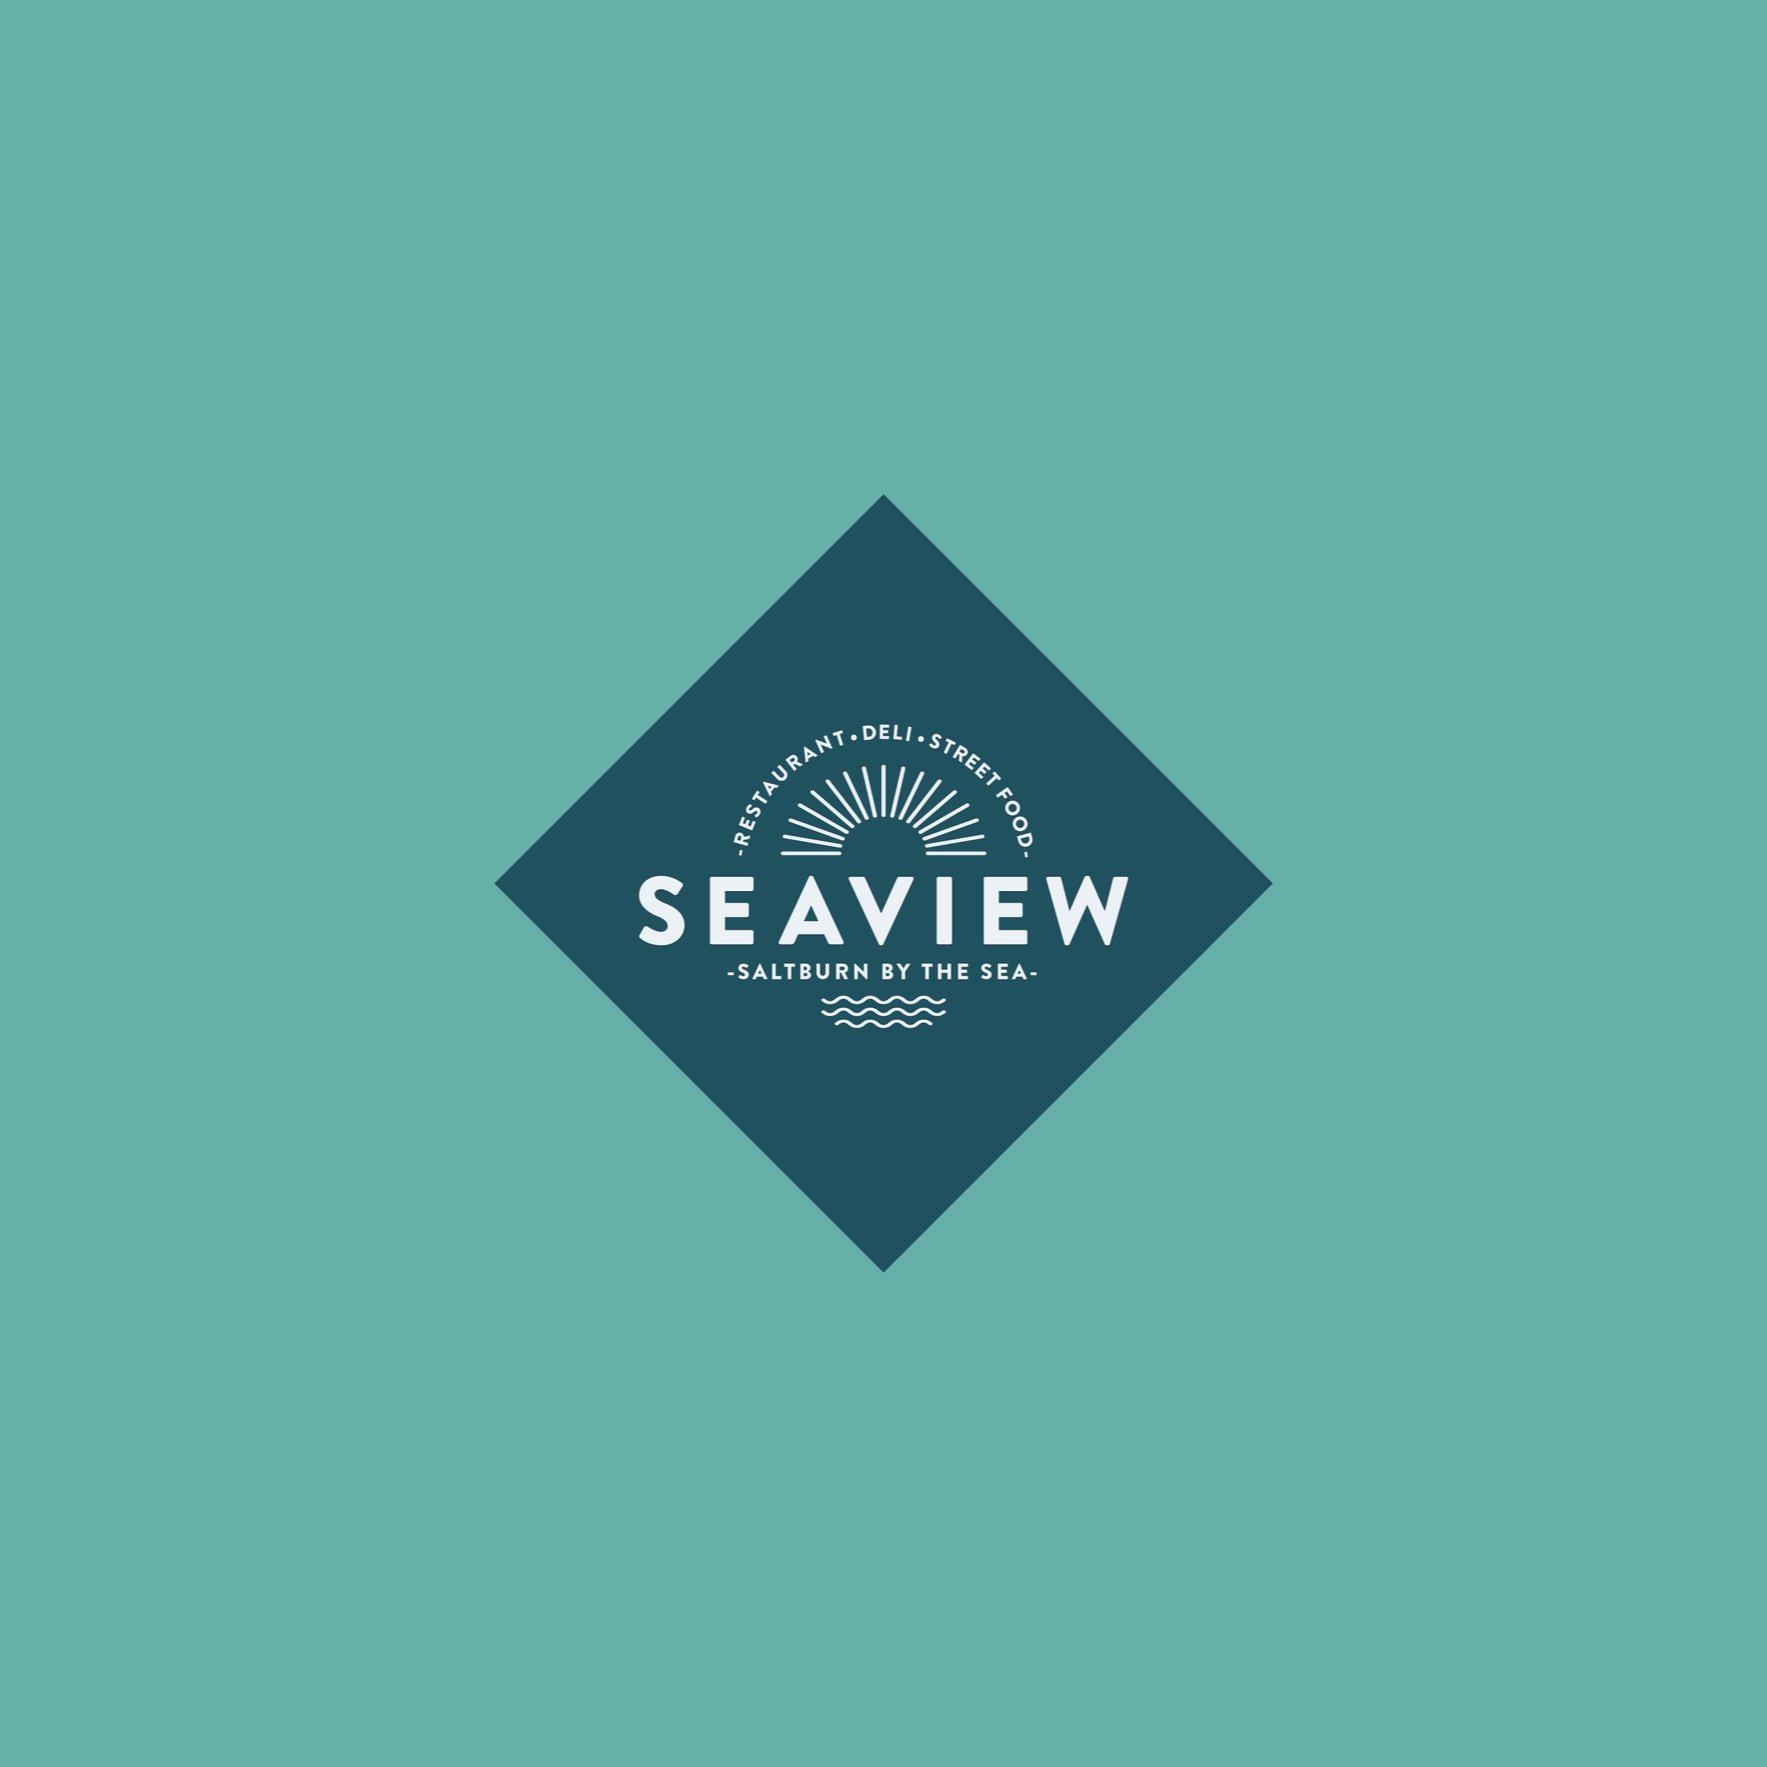 Logo Design For A Seafood Restaurant Based In Yorkshire UK